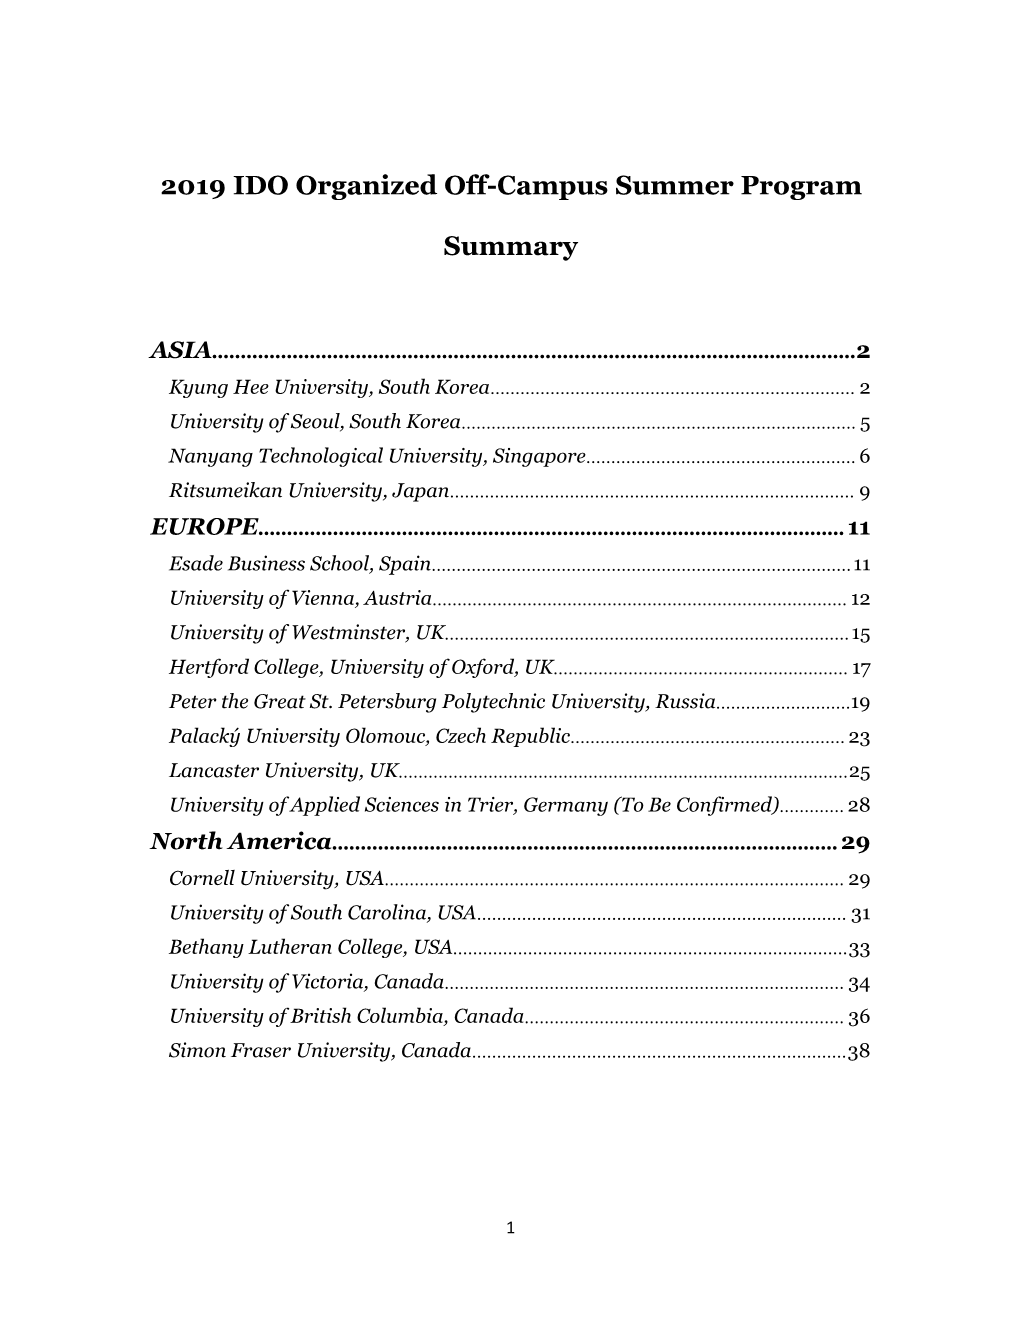 2019 IDO Organized Off-Campus Summer Program-20190117-Ann.Pdf